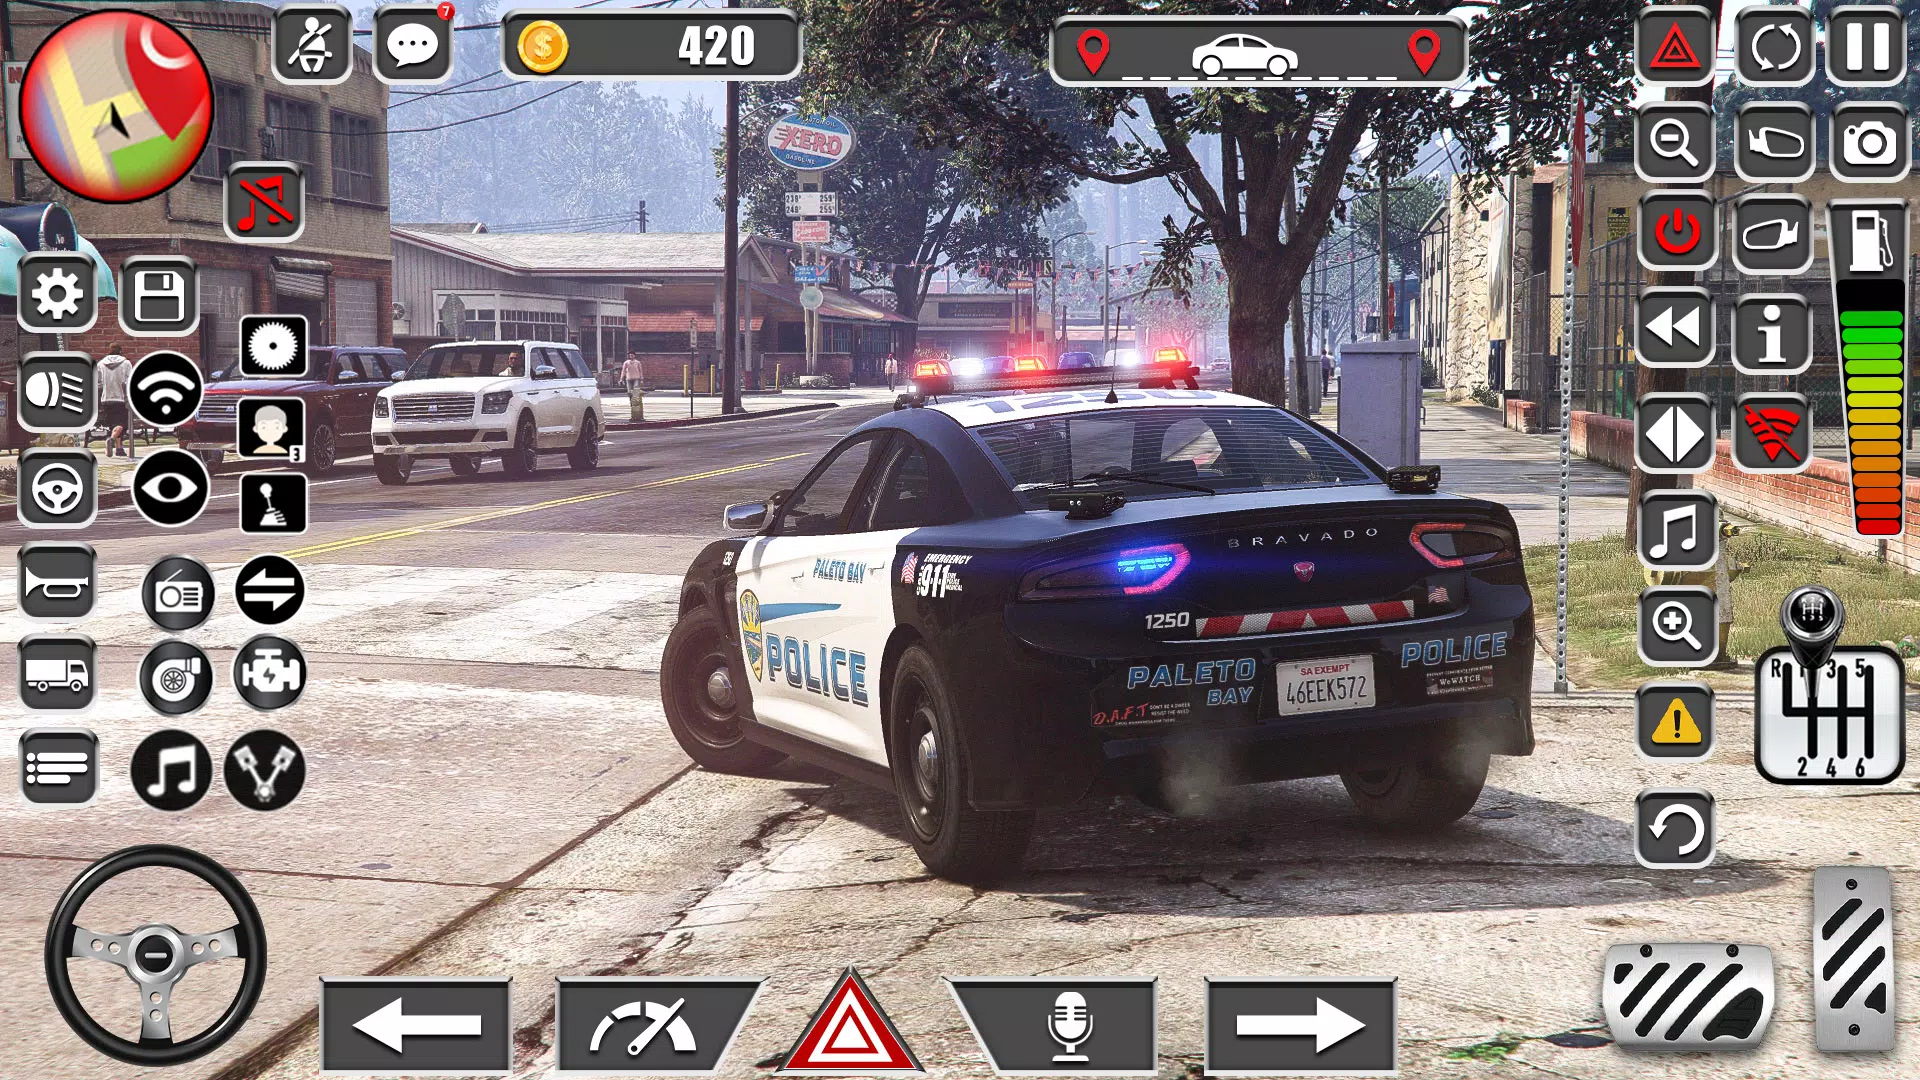 Download do APK de Carro Polícia Jogos de Carros para Android